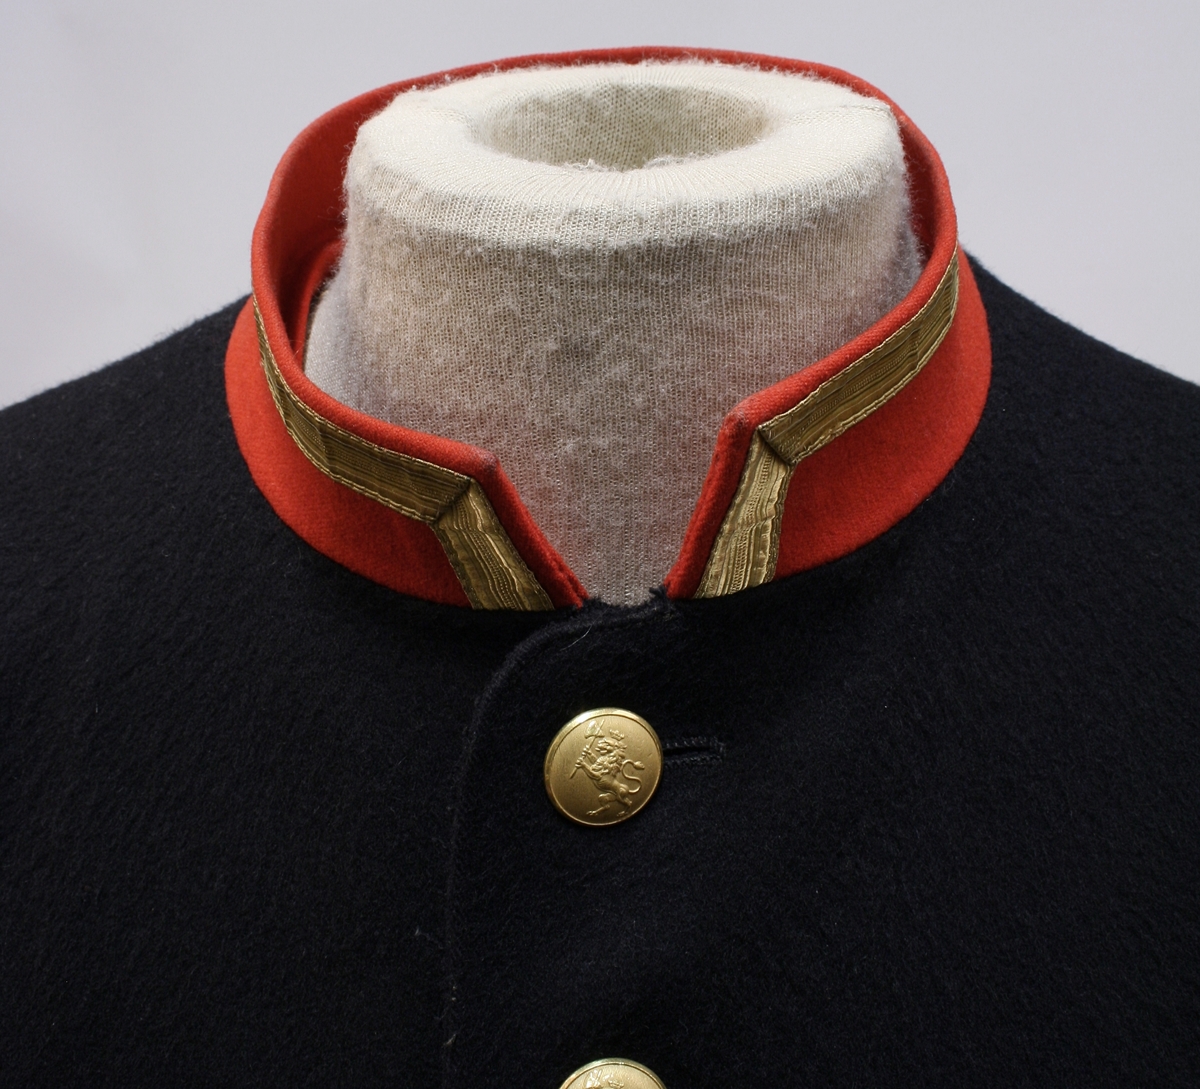 Rød krage med gullkant, riksløveknapper (enkeltknepper), splitt bak med seks knapper og rød paspoil.